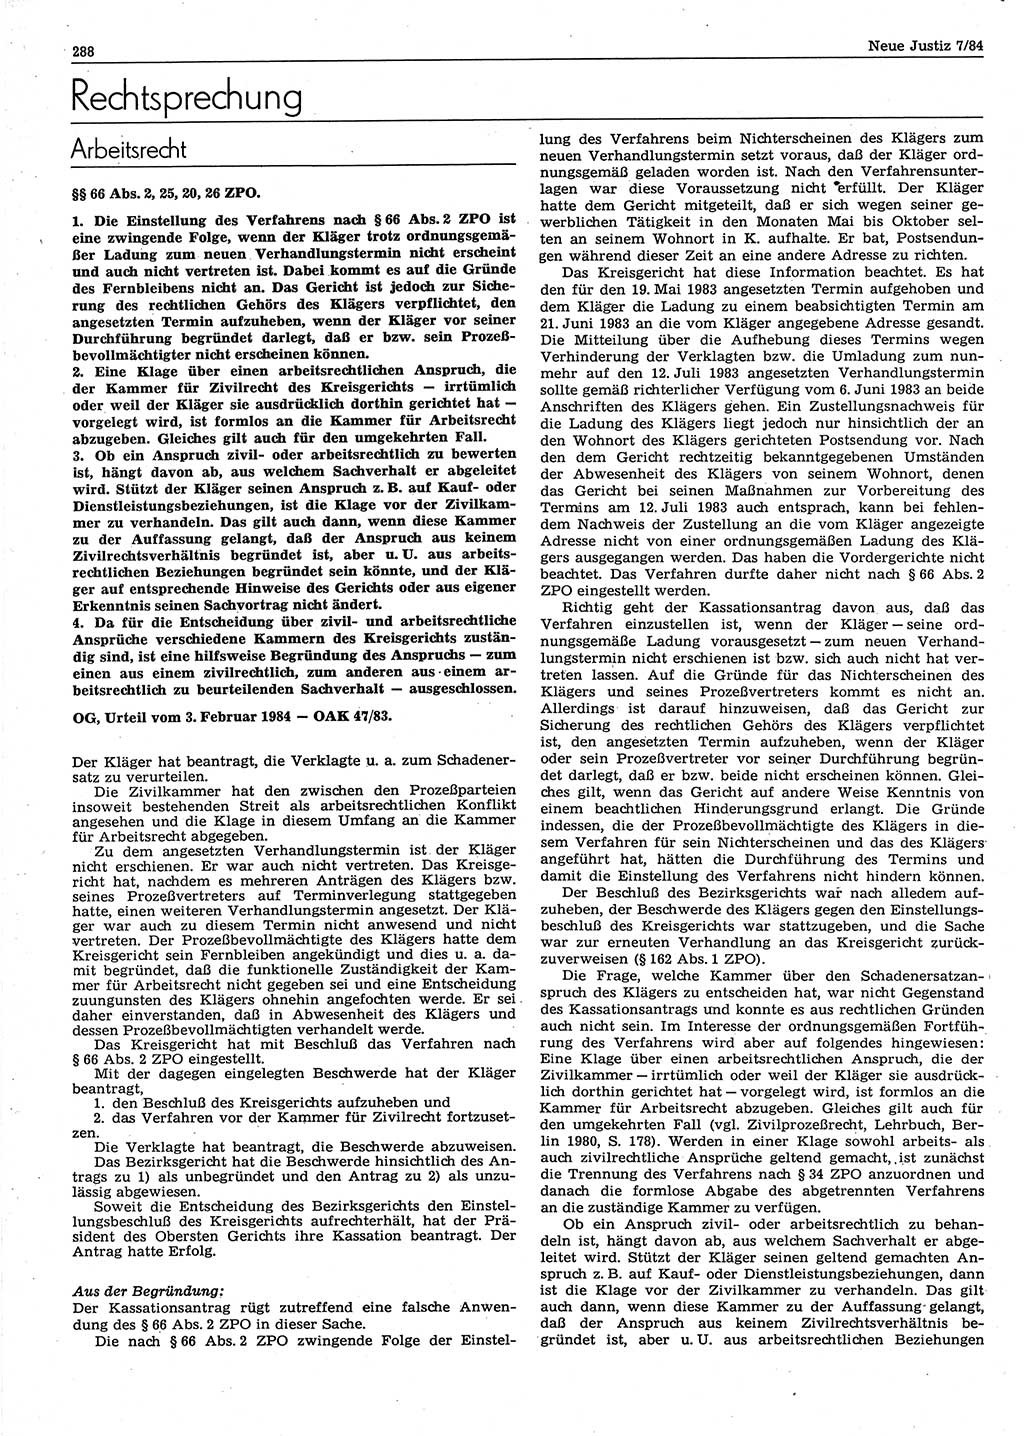 Neue Justiz (NJ), Zeitschrift für sozialistisches Recht und Gesetzlichkeit [Deutsche Demokratische Republik (DDR)], 38. Jahrgang 1984, Seite 288 (NJ DDR 1984, S. 288)